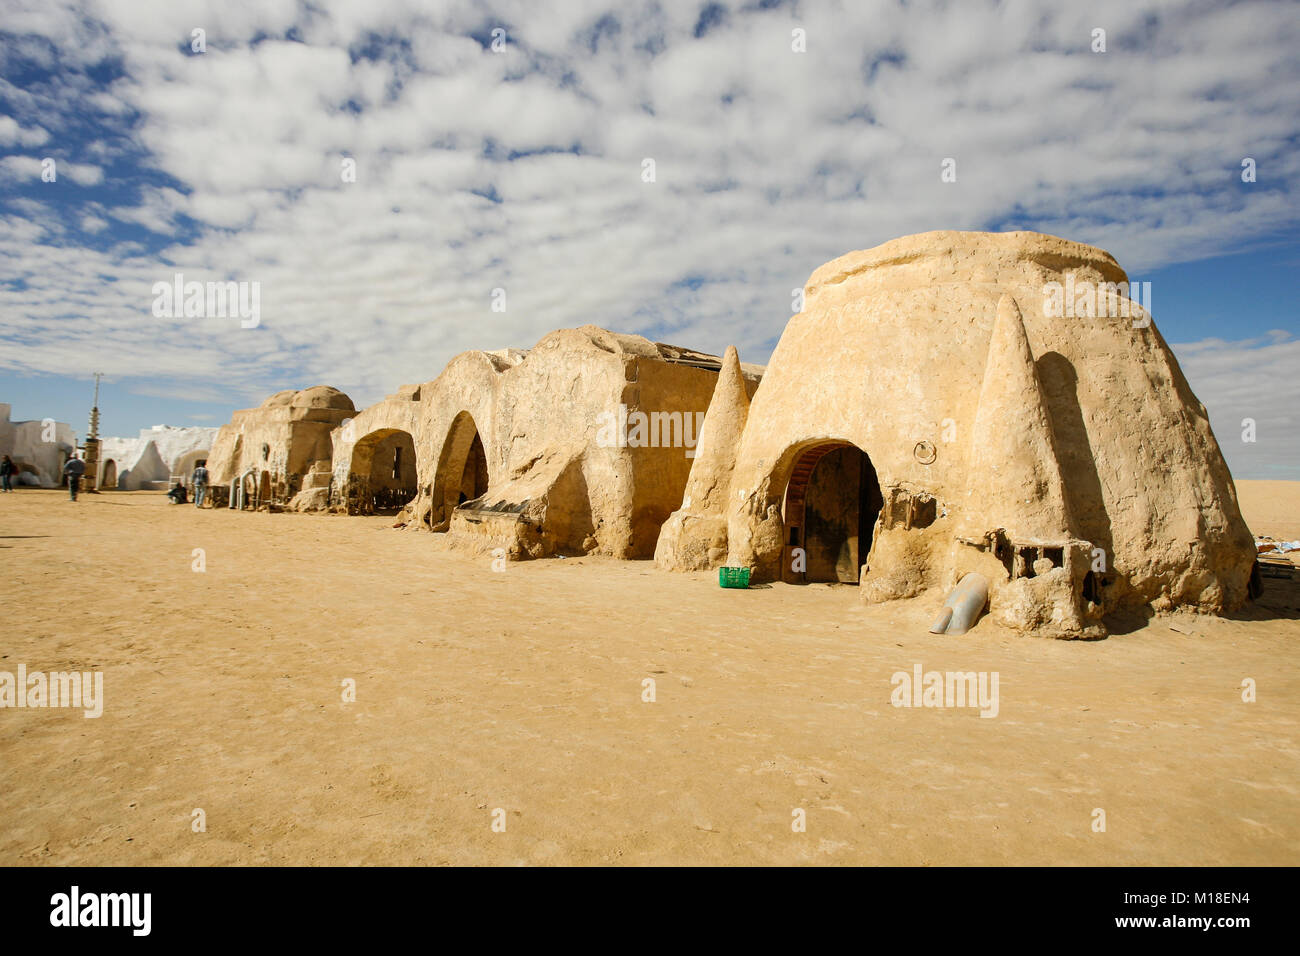 Teil des kinematographischen Set der "Star Wars"-Film, in Tataouine Dorf, in Tunesien. Heute ist es eine touristische Attraktion. Stockfoto